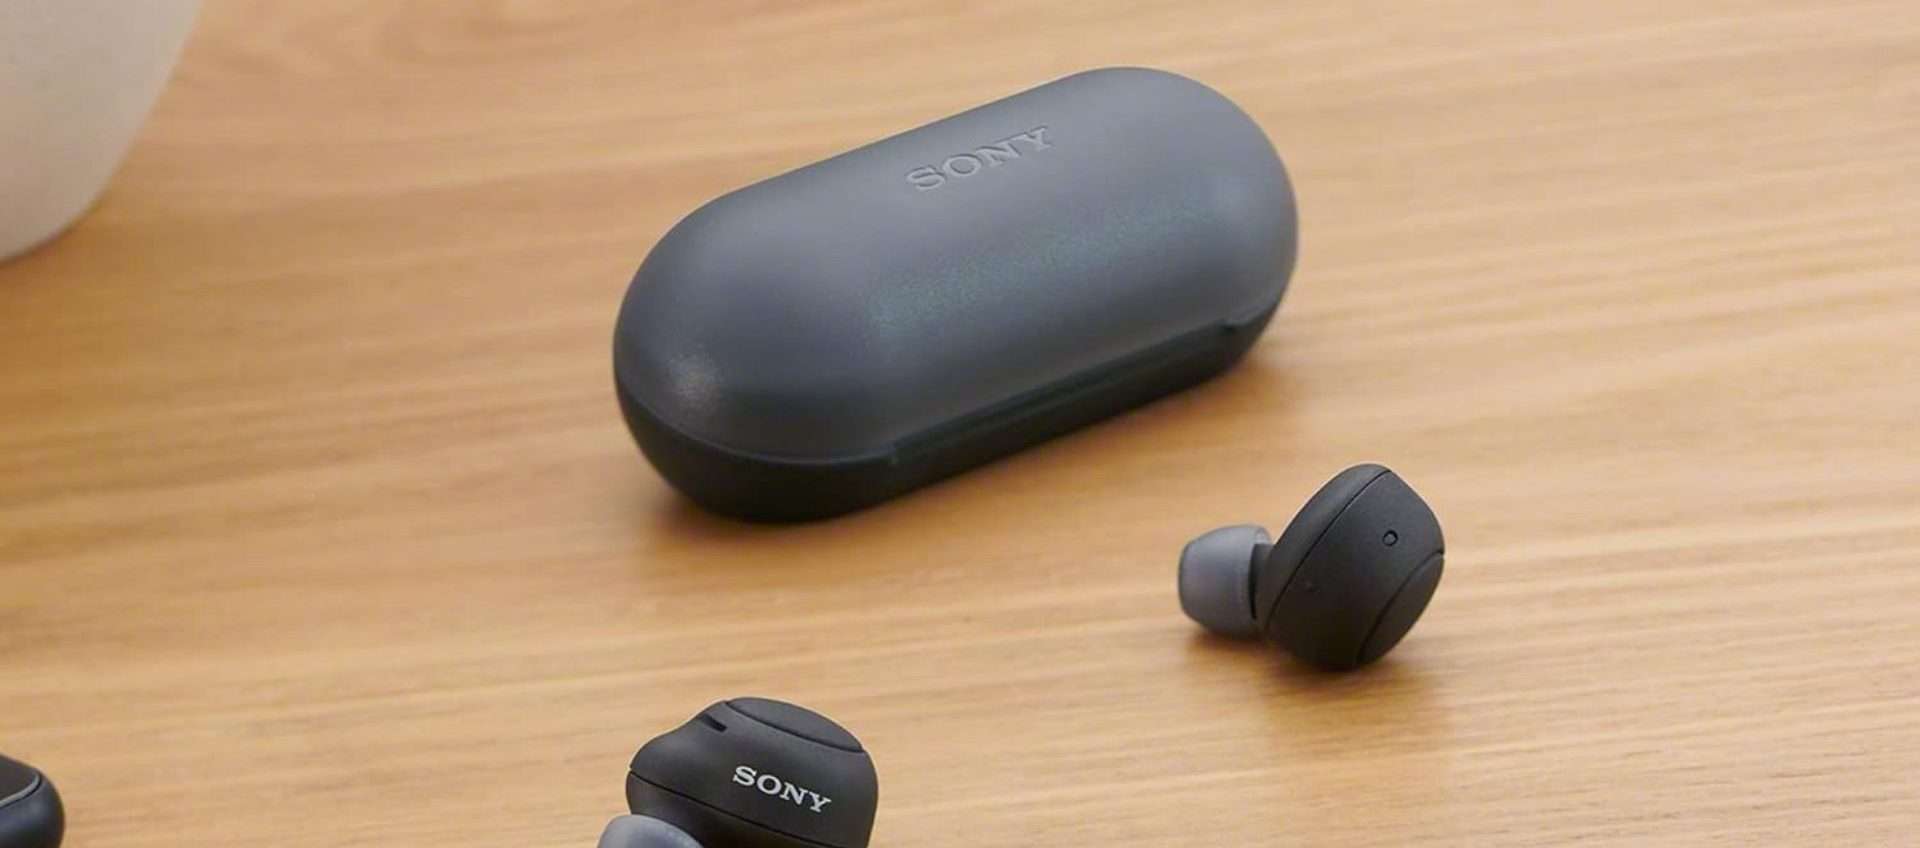 Gli auricolari Sony WF-500 sono su Amazon a metà prezzo: offerta imperdibile